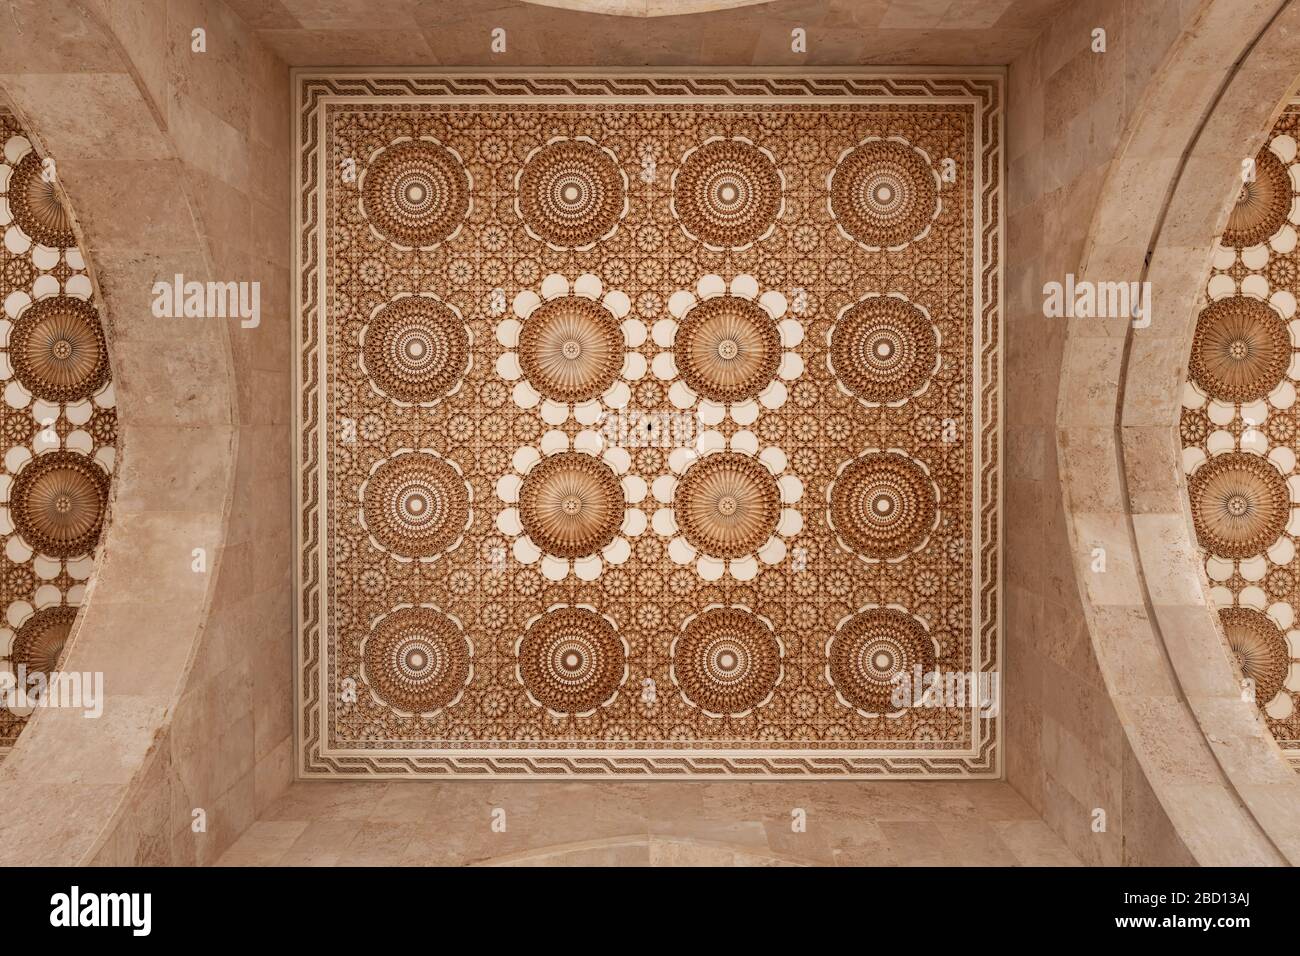 Beau plafond avec décoration en plâtre sculpté et murs en marbre. Détail architectural de la mosquée Hassan II à Casablanca, Maroc. Banque D'Images